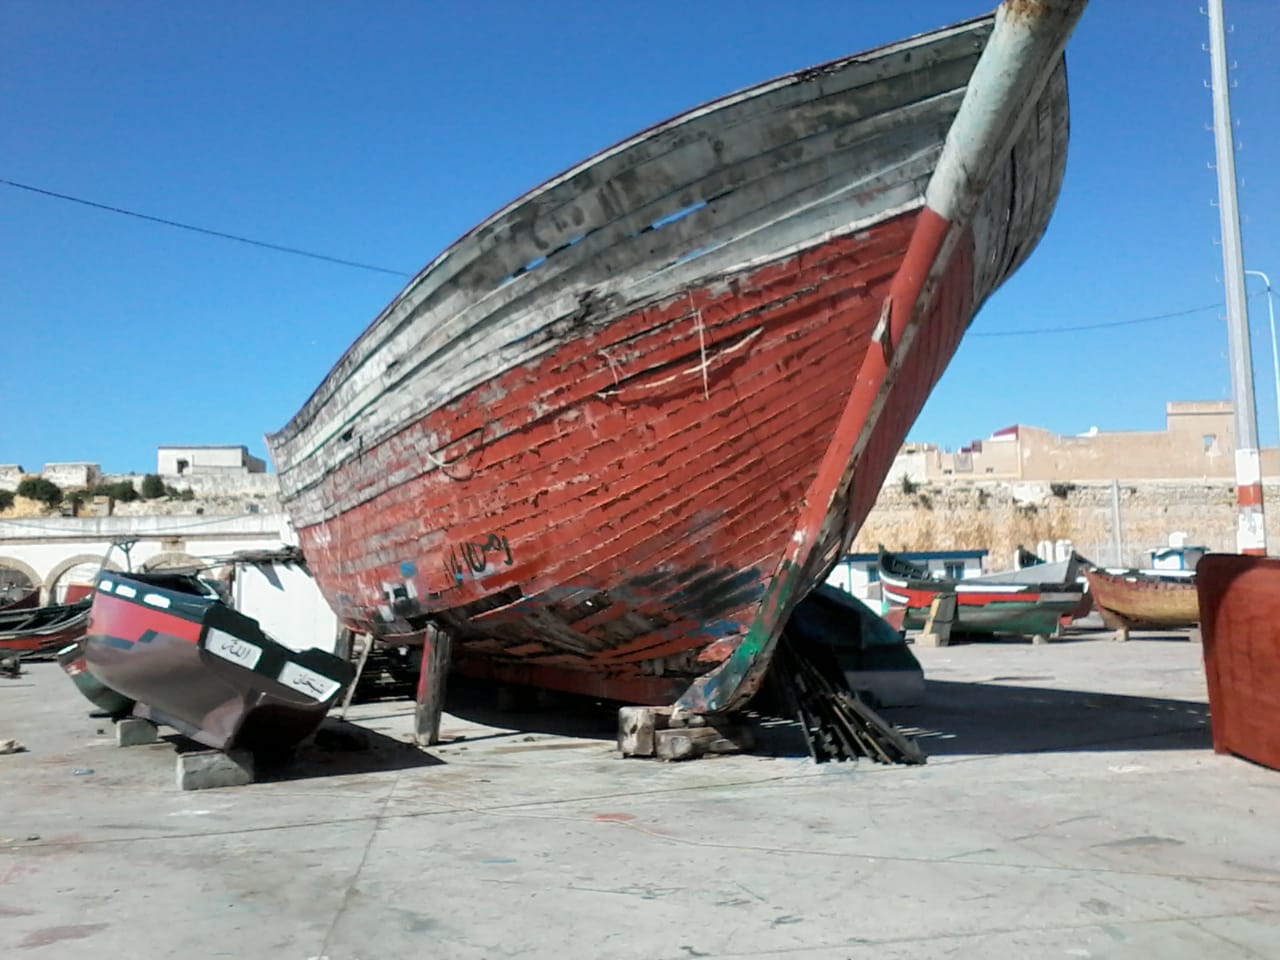 مركب للصيد محجوز بورش بناء المراكب بميناء الجديدة منذ 28 سنة يهدد حياة البحارة والمهنيين